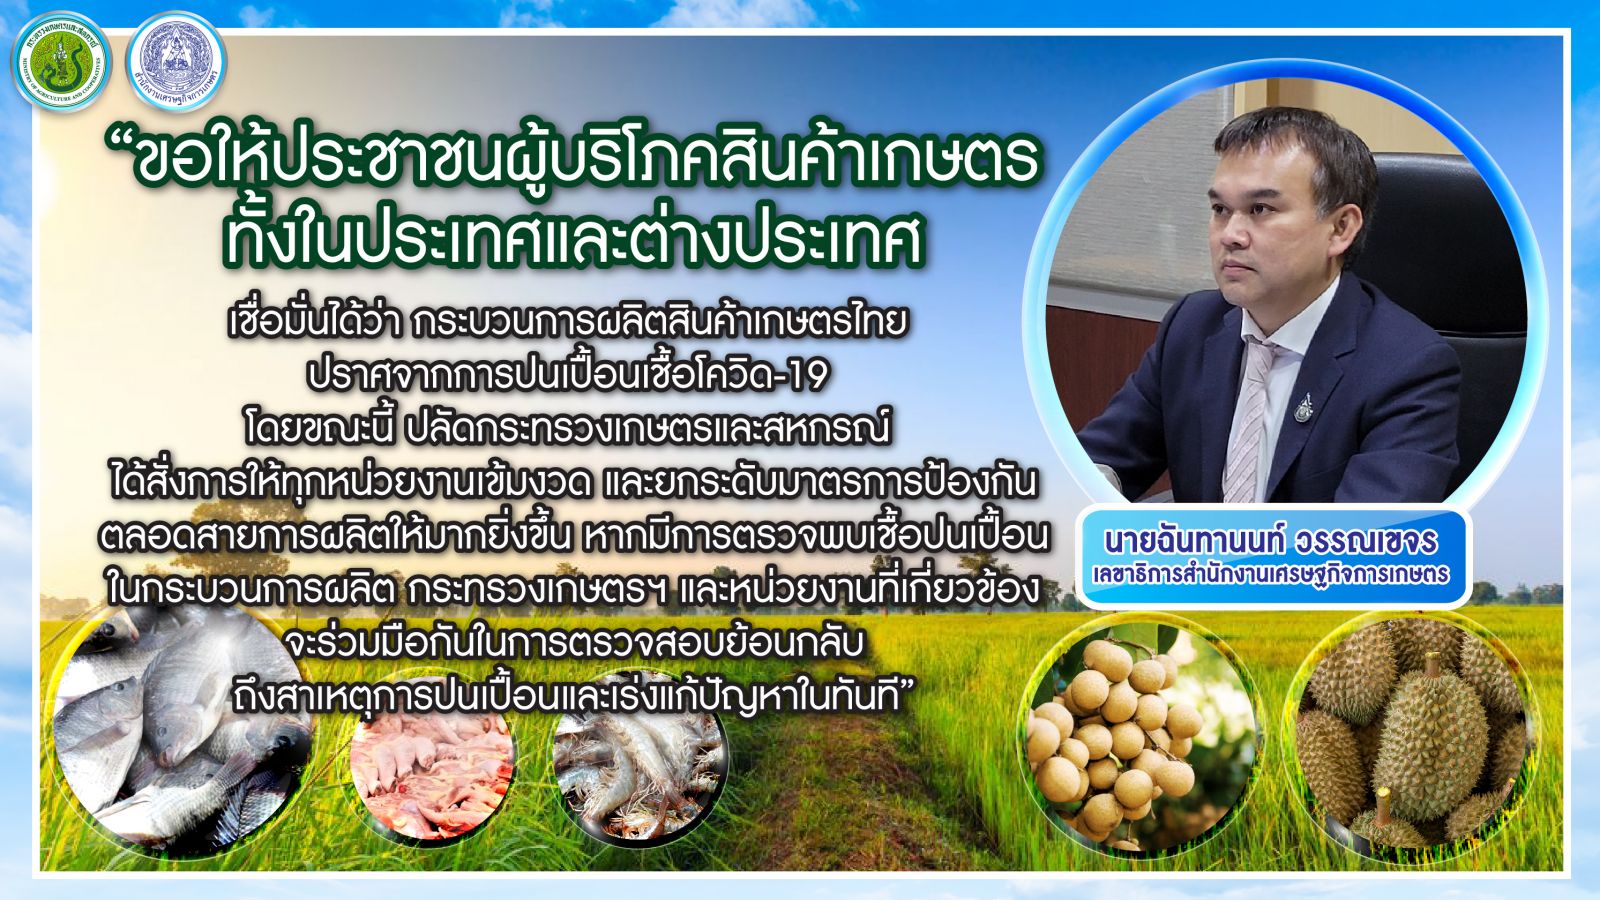 ปลัดเกษตรฯ สั่งเข้ม ย้ำทุกหน่วยงาน ยกระดับมาตรการ ป้องกันโควิด-19 ตลอดสายการผลิต ผู้บริโภคมั่นใจได้ กระบวนการผลิตสินค้าเกษตรไทย ปราศจากการปนเปื้อนอย่างแน่นอน